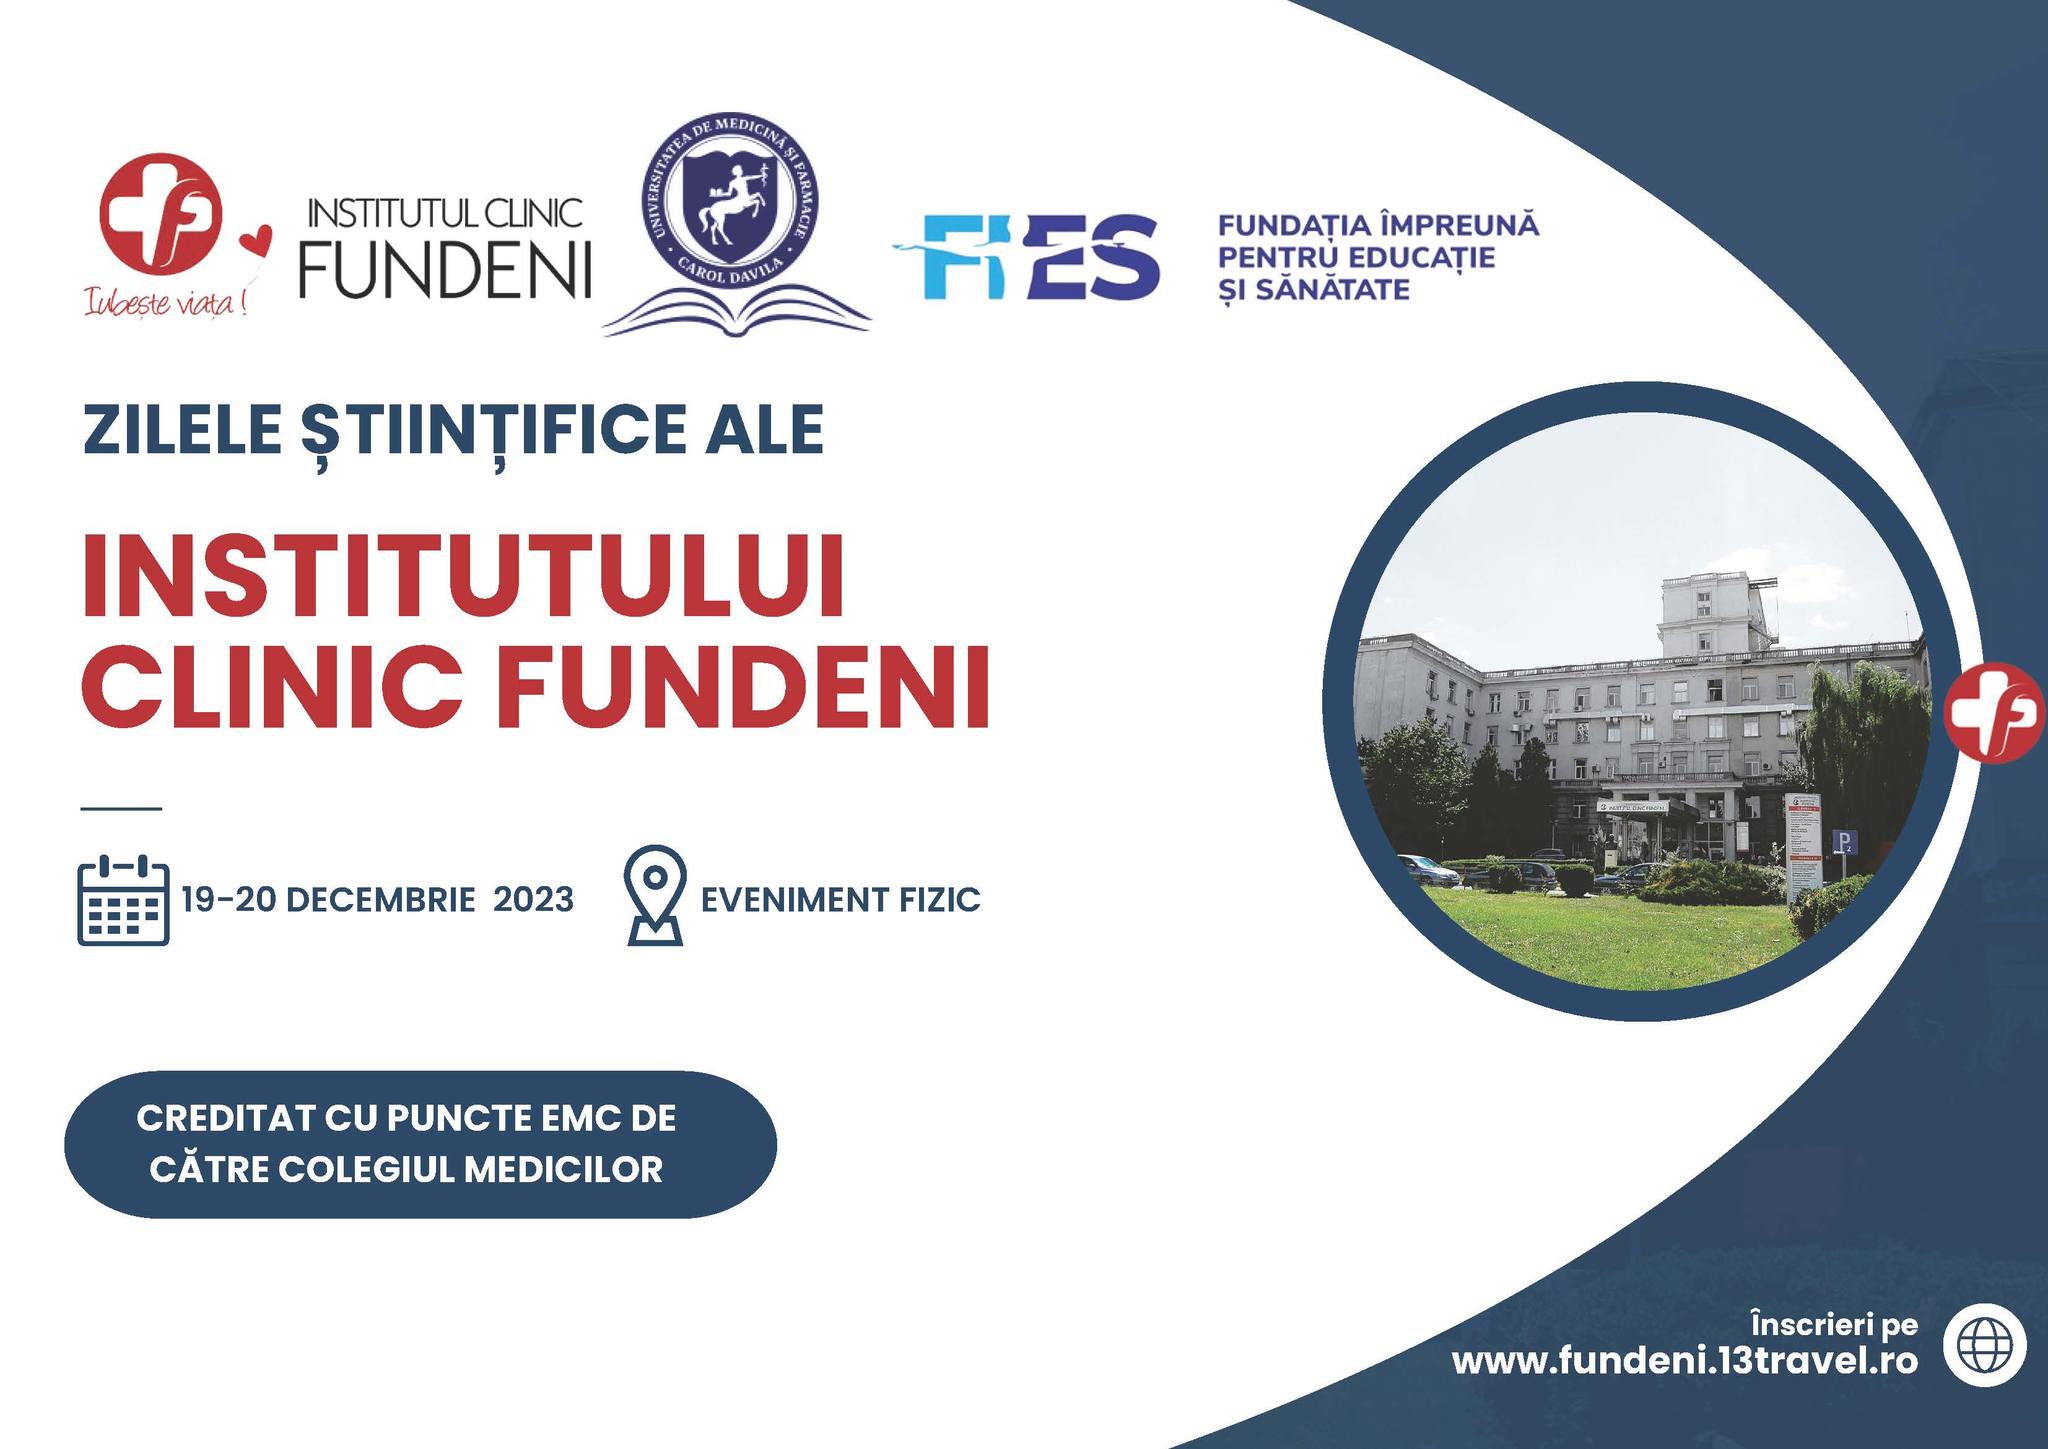  Zilele Științifice ale Institutului Clinic Fundeni, organizate pe 19-20 decembrie 